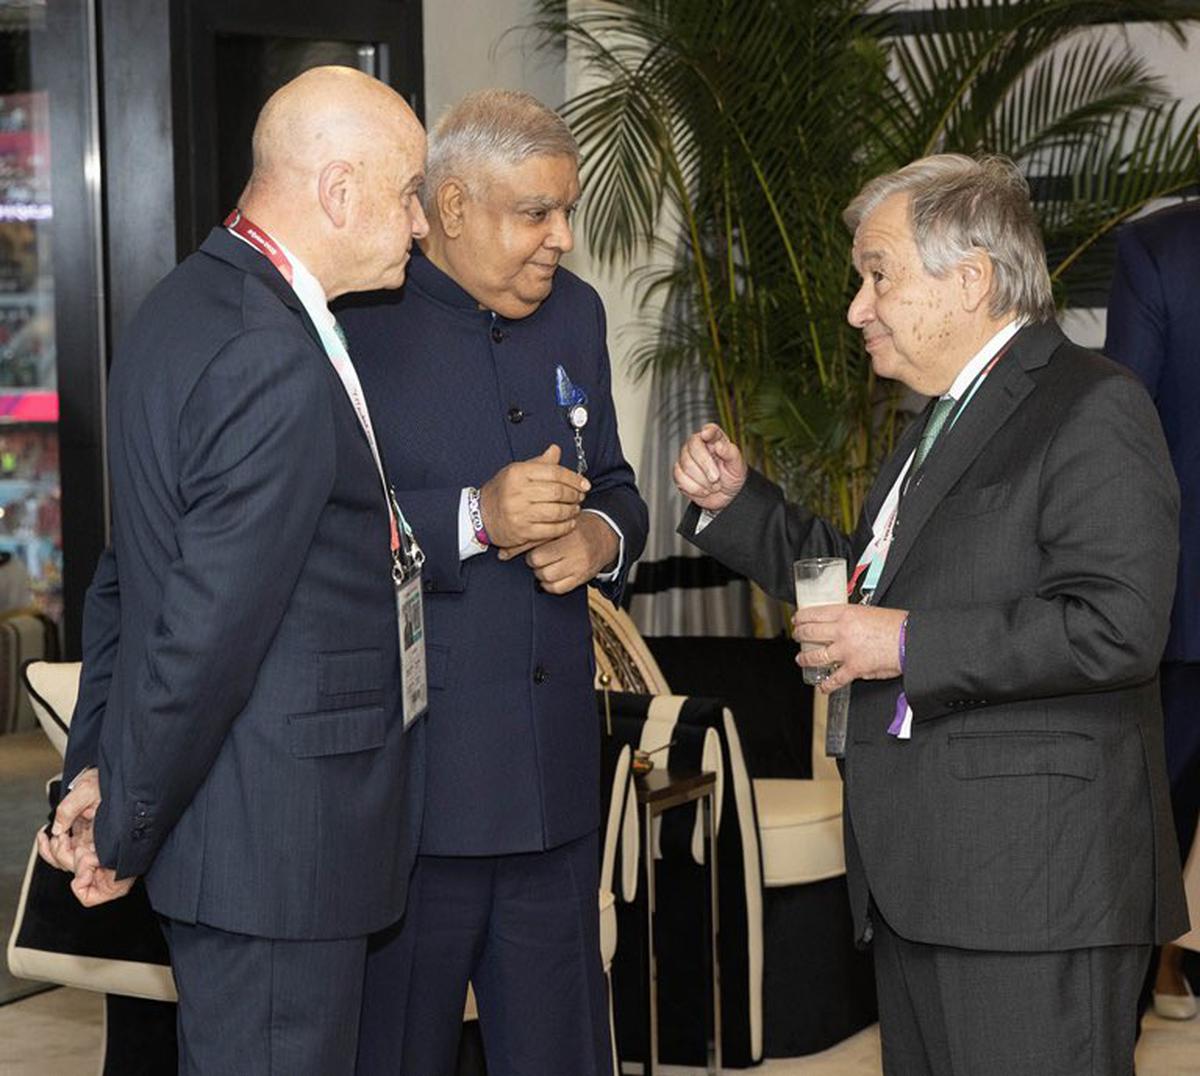 FIFA World Cup Qatar 2022 | Indian Vice-President Dhankar meets FIFA, world leaders